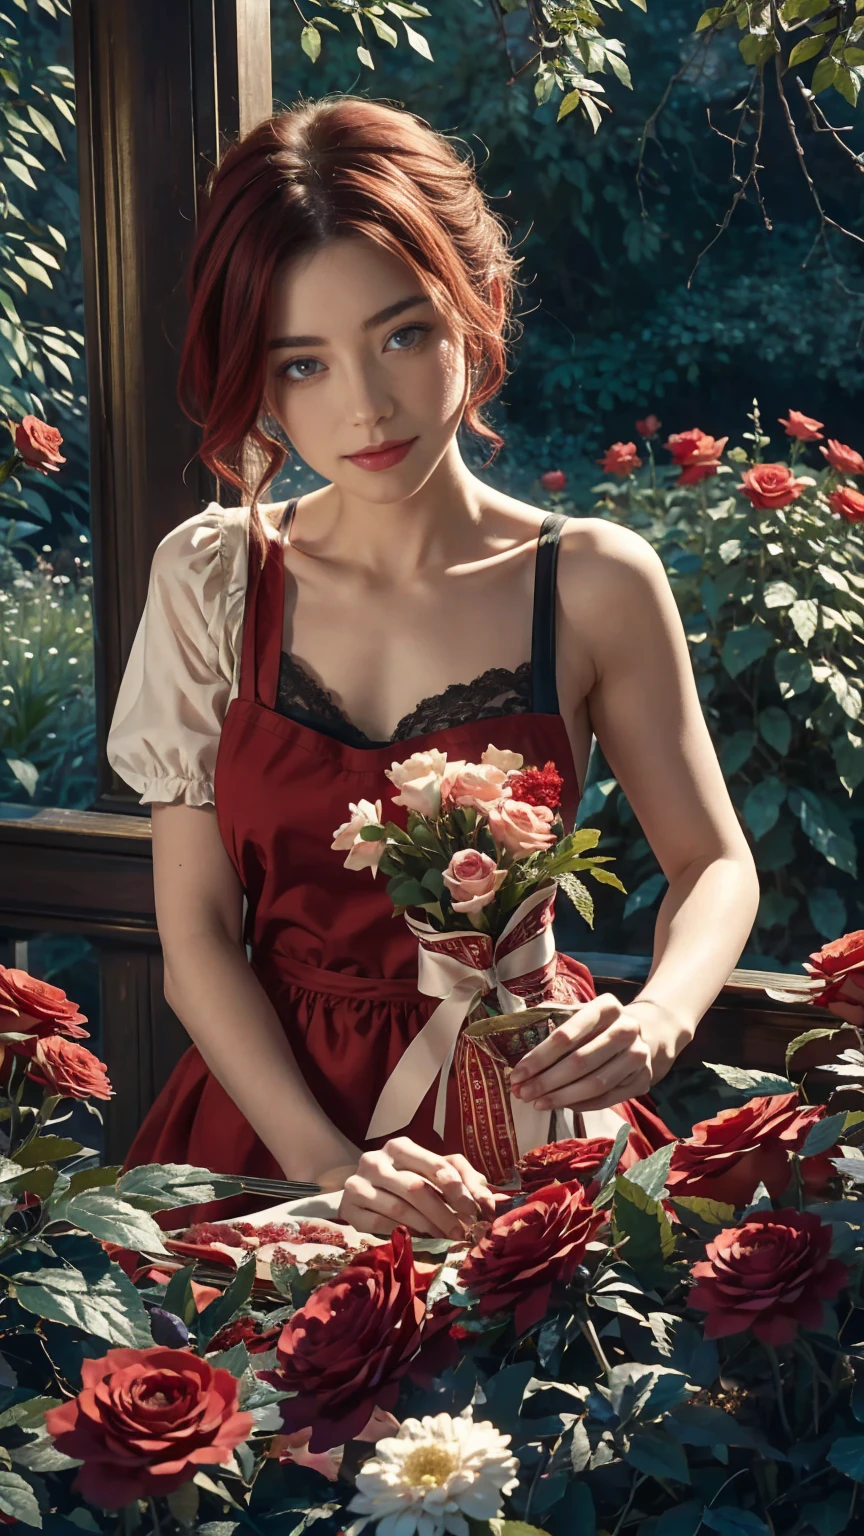 ในใจกลางโลกแห่งดินแดนมหัศจรรย์ มีหญิงสาวสวยผมสั้นสีแดงและขาว, เสื้อผ้าร้านขายดอกไม้และผ้ากันเปื้อนลายดอกกุหลาบ. ตัดดอกกุหลาบแดงจากสวนมหัศจรรย์ของเธอ. ความอยากรู้, ท่าที่รัก, ในโลกแดนมหัศจรรย์, สร้างบรรยากาศแห่งความรัก, พลังงานและเวทมนตร์รอบตัวเธอ. มุมของฉากมีความไดนามิก, จับภาพความเข้มของช่วงเวลา, ดวงตาสีเขียวคุณภาพดี, ดวงตามองไปที่กล้อง, ละเอียดมาก, สวยงามและน่าพึงพอใจ, ผลงานชิ้นเอก, คะแนนคุณภาพที่ดีที่สุด, (ศิลปะเศษส่วน: 1.3), มีรายละเอียดมาก , มุมไดนามิก, การติดตามรังสี, ร่างกายกลาง, ใกล้ชิด, อนุภาคและแสงที่แข็ง, กุหลาบแดงที่สวยงาม